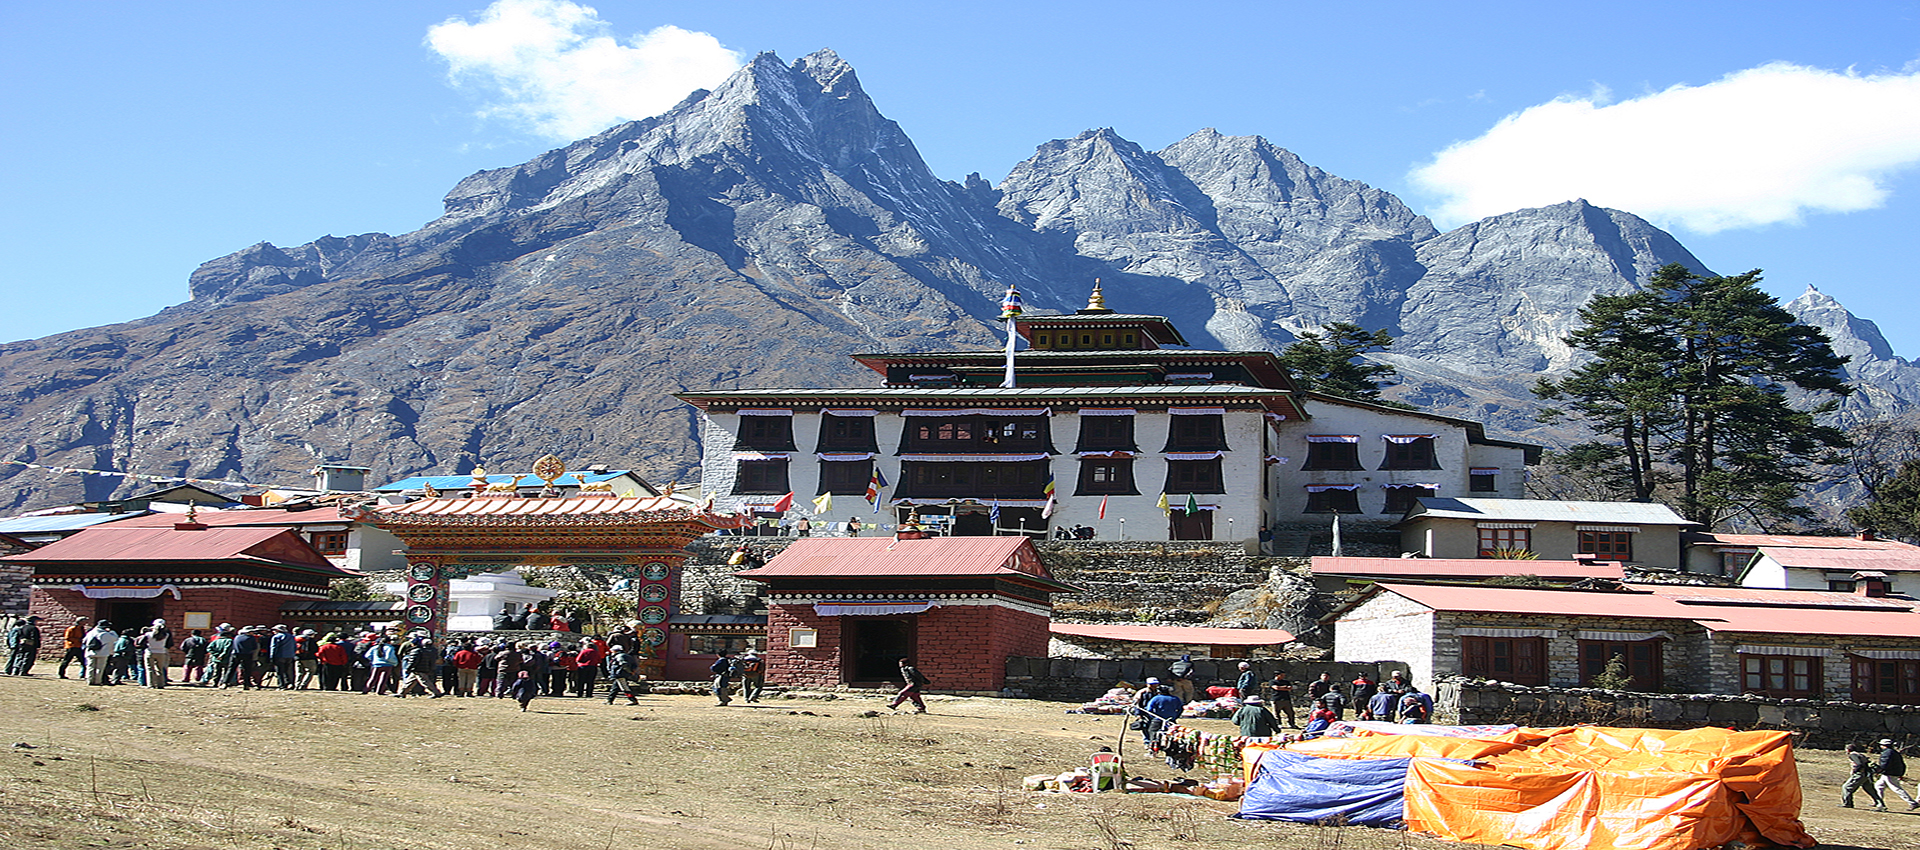 Tengboche Monastery - 3860m